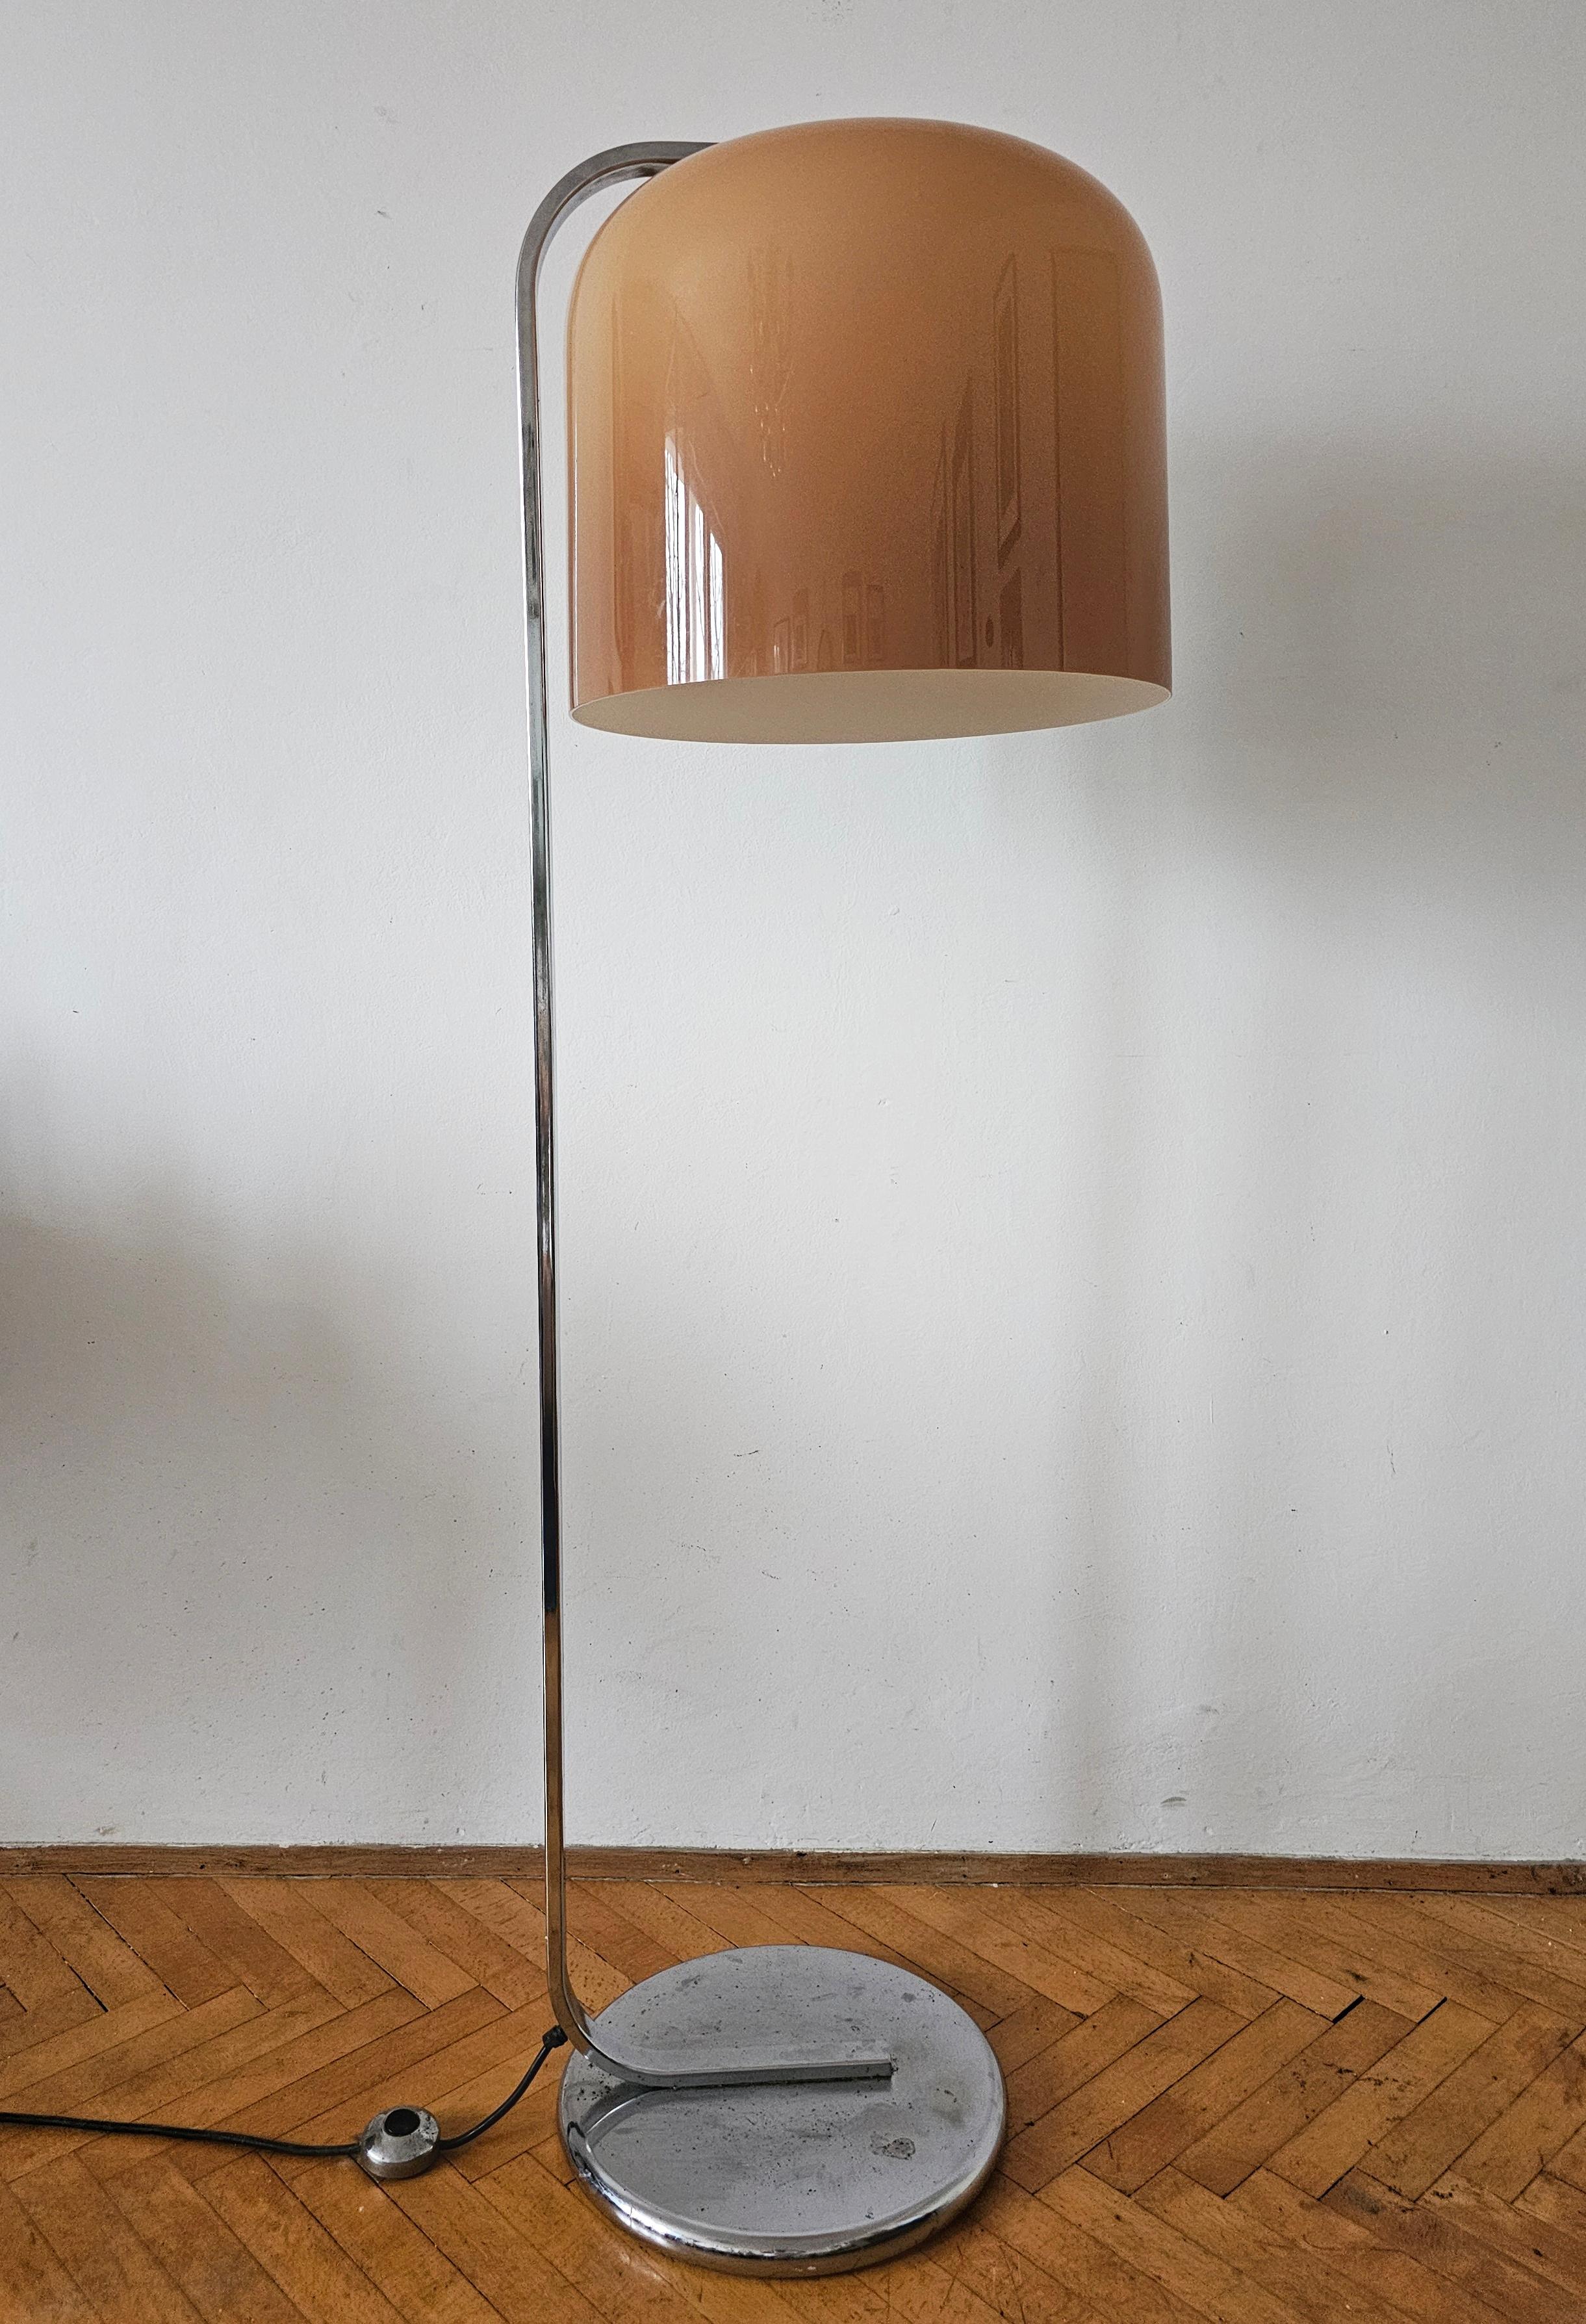 Vous trouverez dans cette annonce un lampadaire exceptionnellement rare de la série Alvise, conçu par Luigi Massoni pour Harvey Guzzini. Elle est dotée d'un pied en acier chromé et d'un grand abat-jour en acrylique de couleur cappuccino. La lampe a